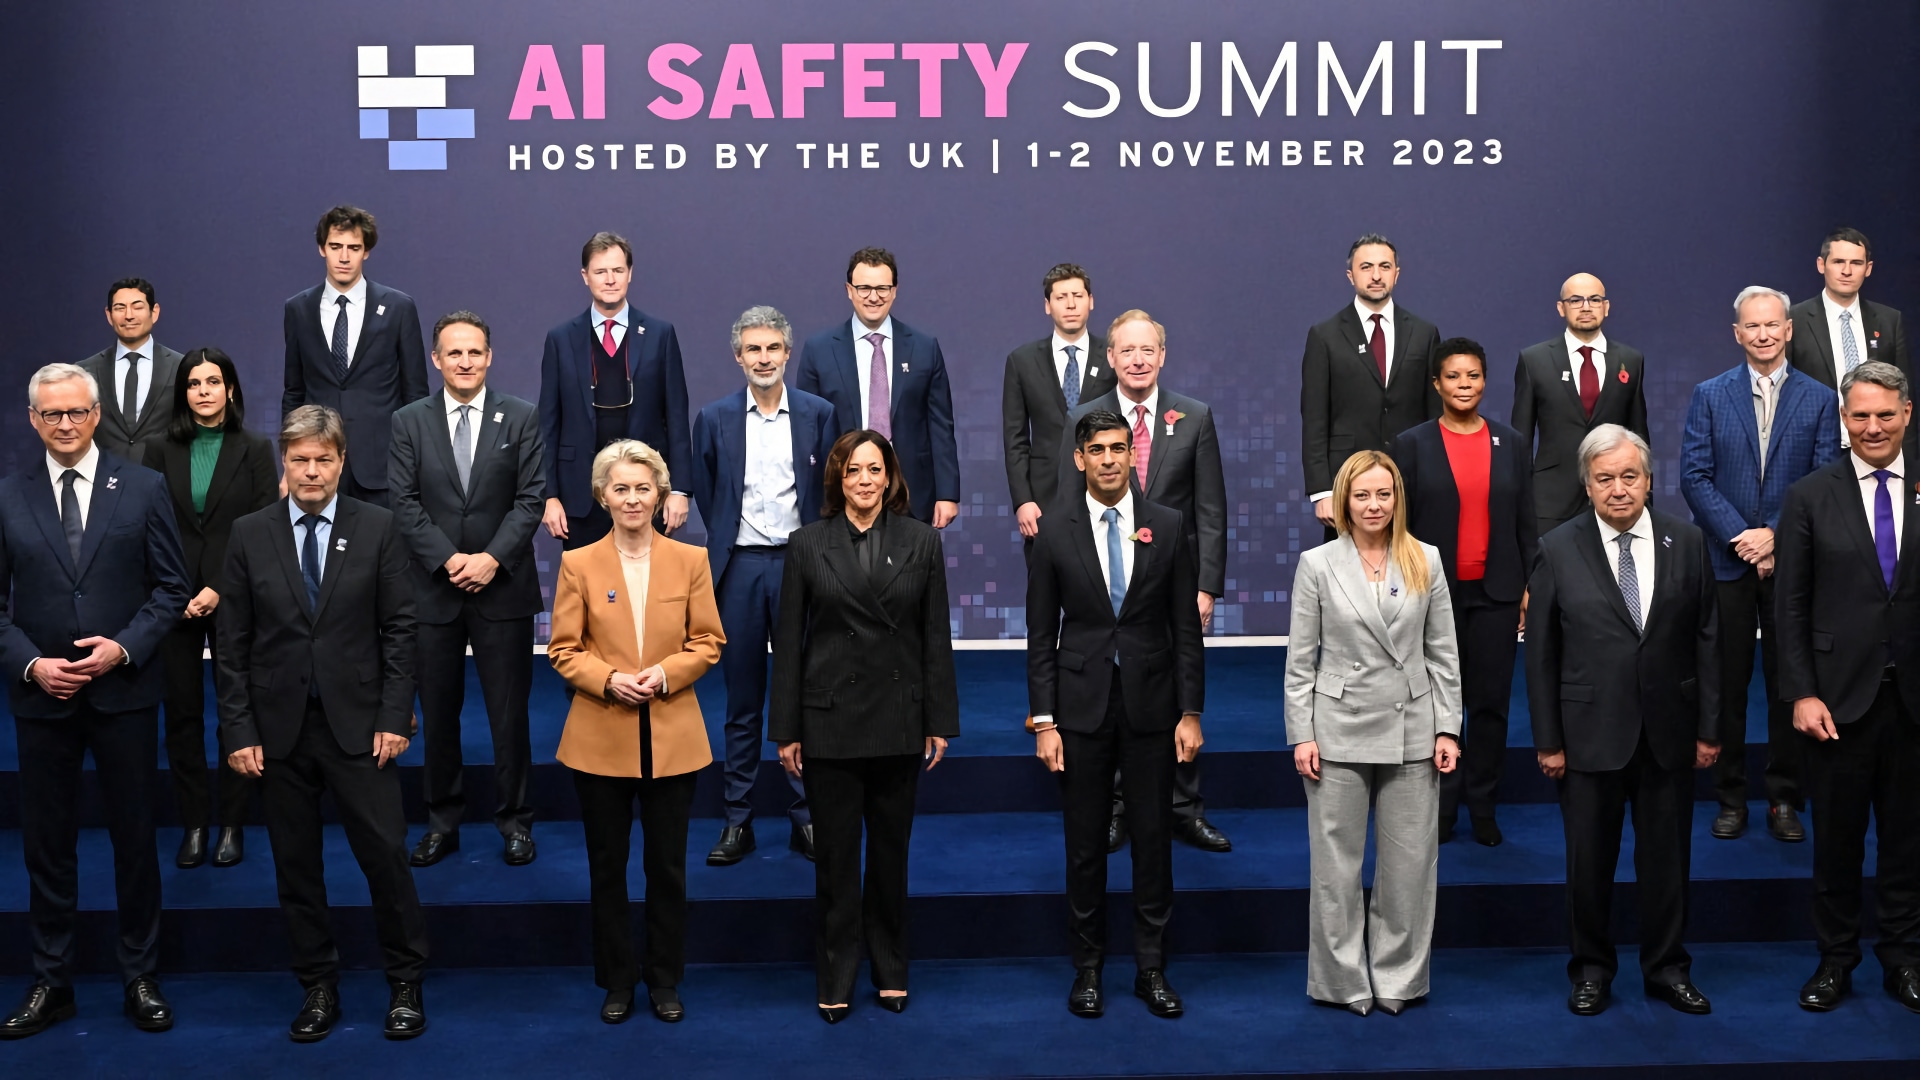 AI biztonság: A világ vezetői összegyűlnek a 2023-as mesterséges intelligencia biztonsági csúcstalálkozón a brit Bletchley Parkban